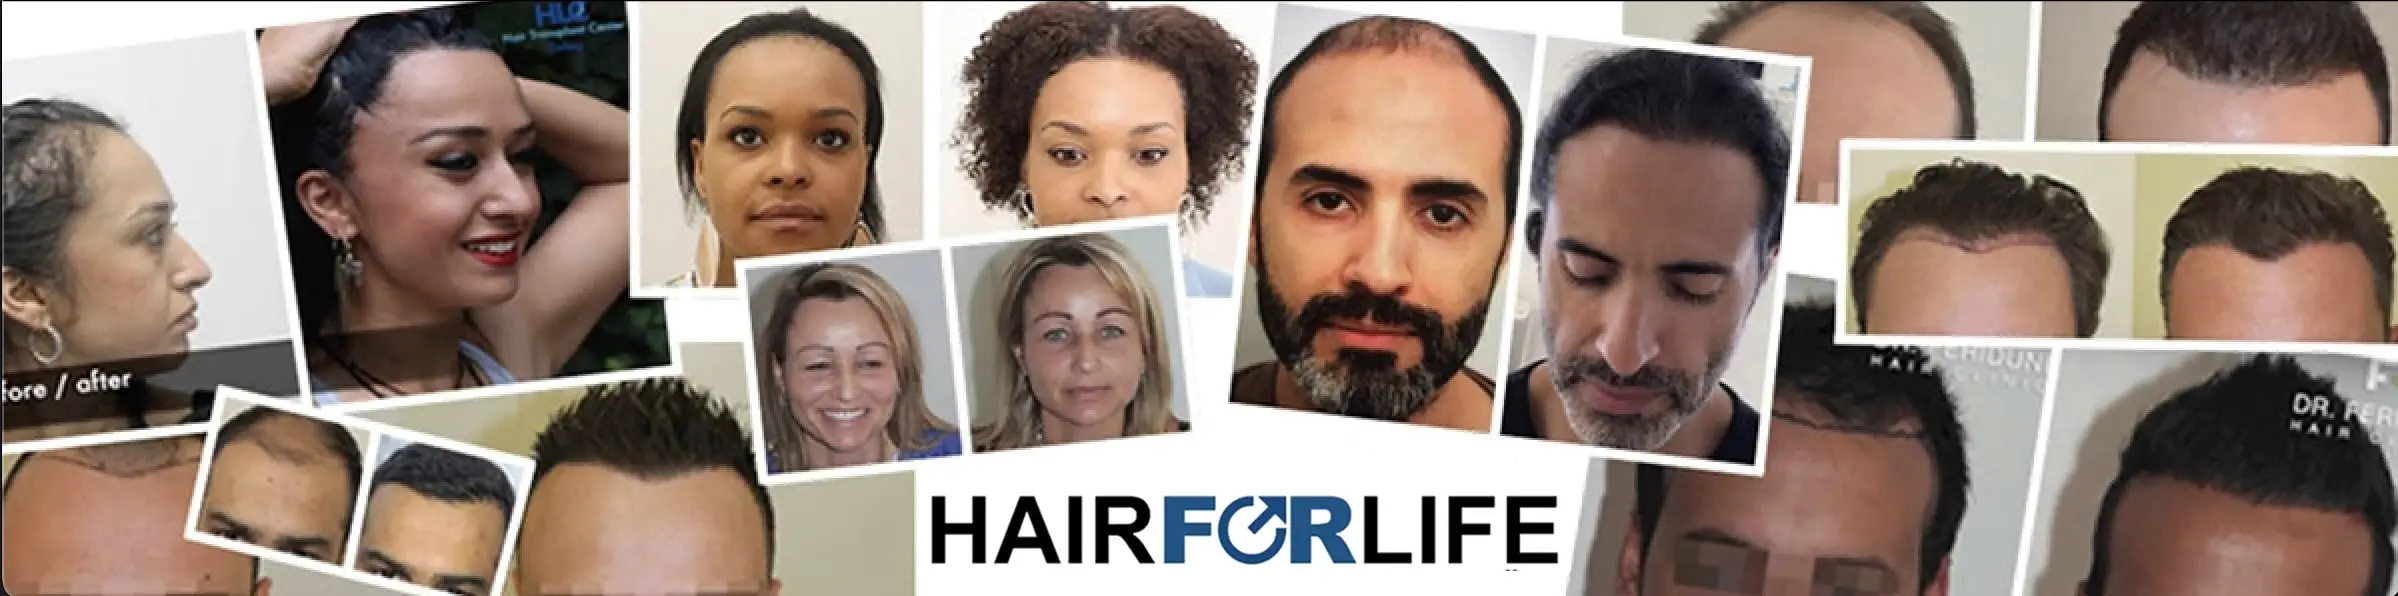 Haartransplantation Beratung Österreich Ärzte Kliniken Hairforlife.at